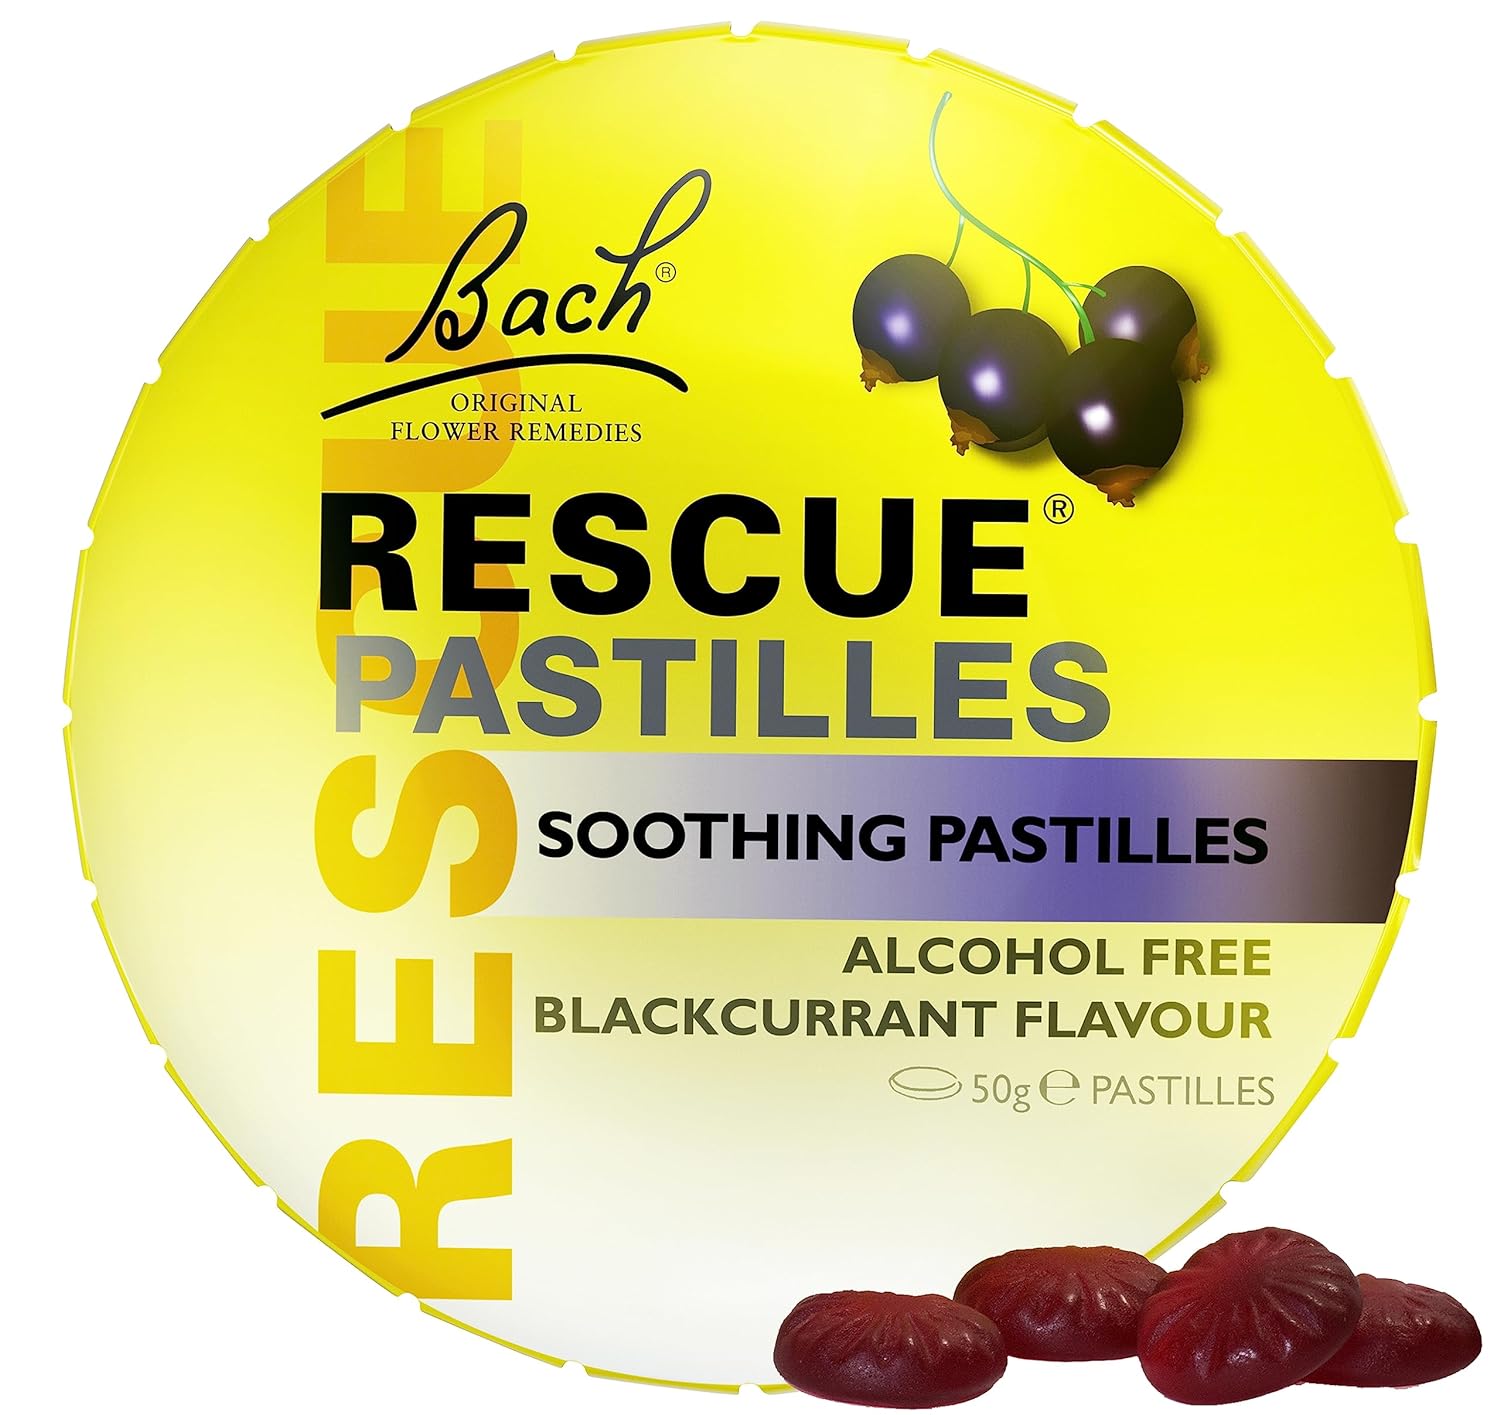 Bach Flower Essences Rescue Remedy Pastilles, Black Currant, 50 Grams
18.1 Grams